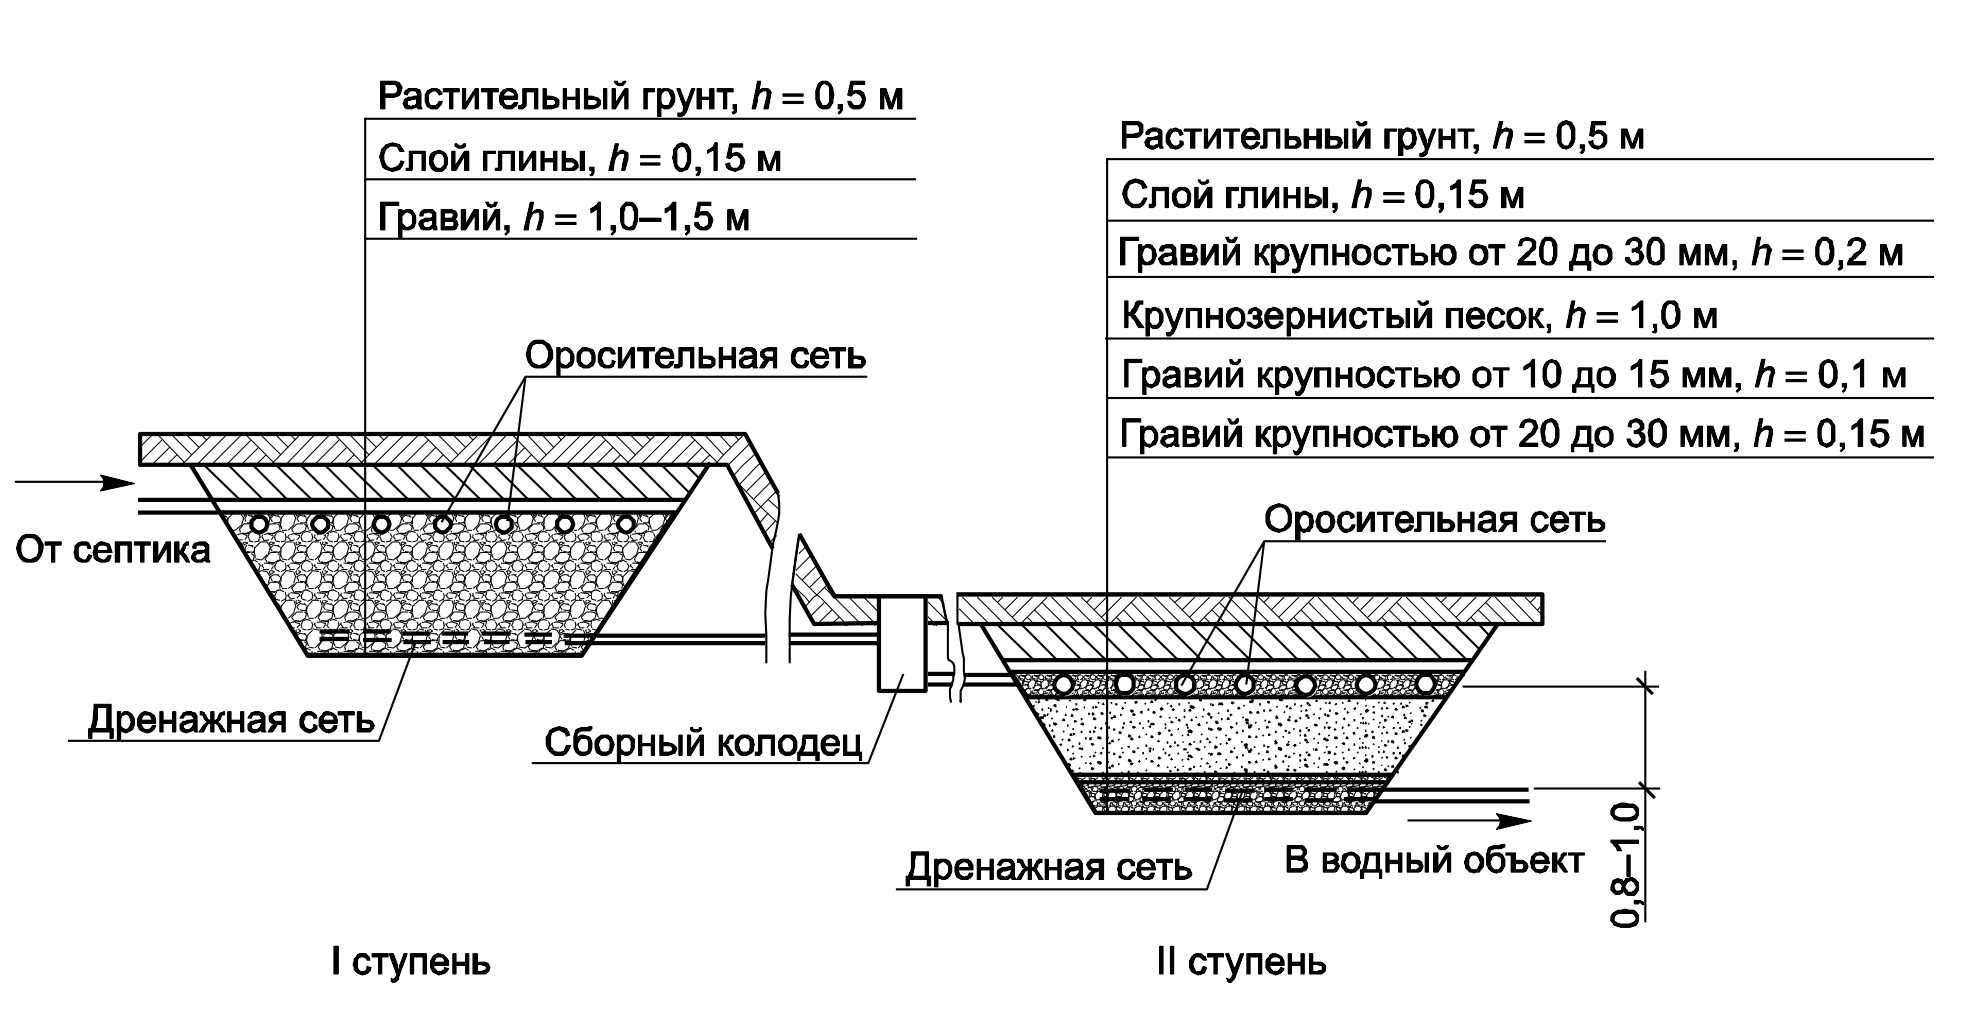 Устройство септика, схема и принцип работы — инжи.ру